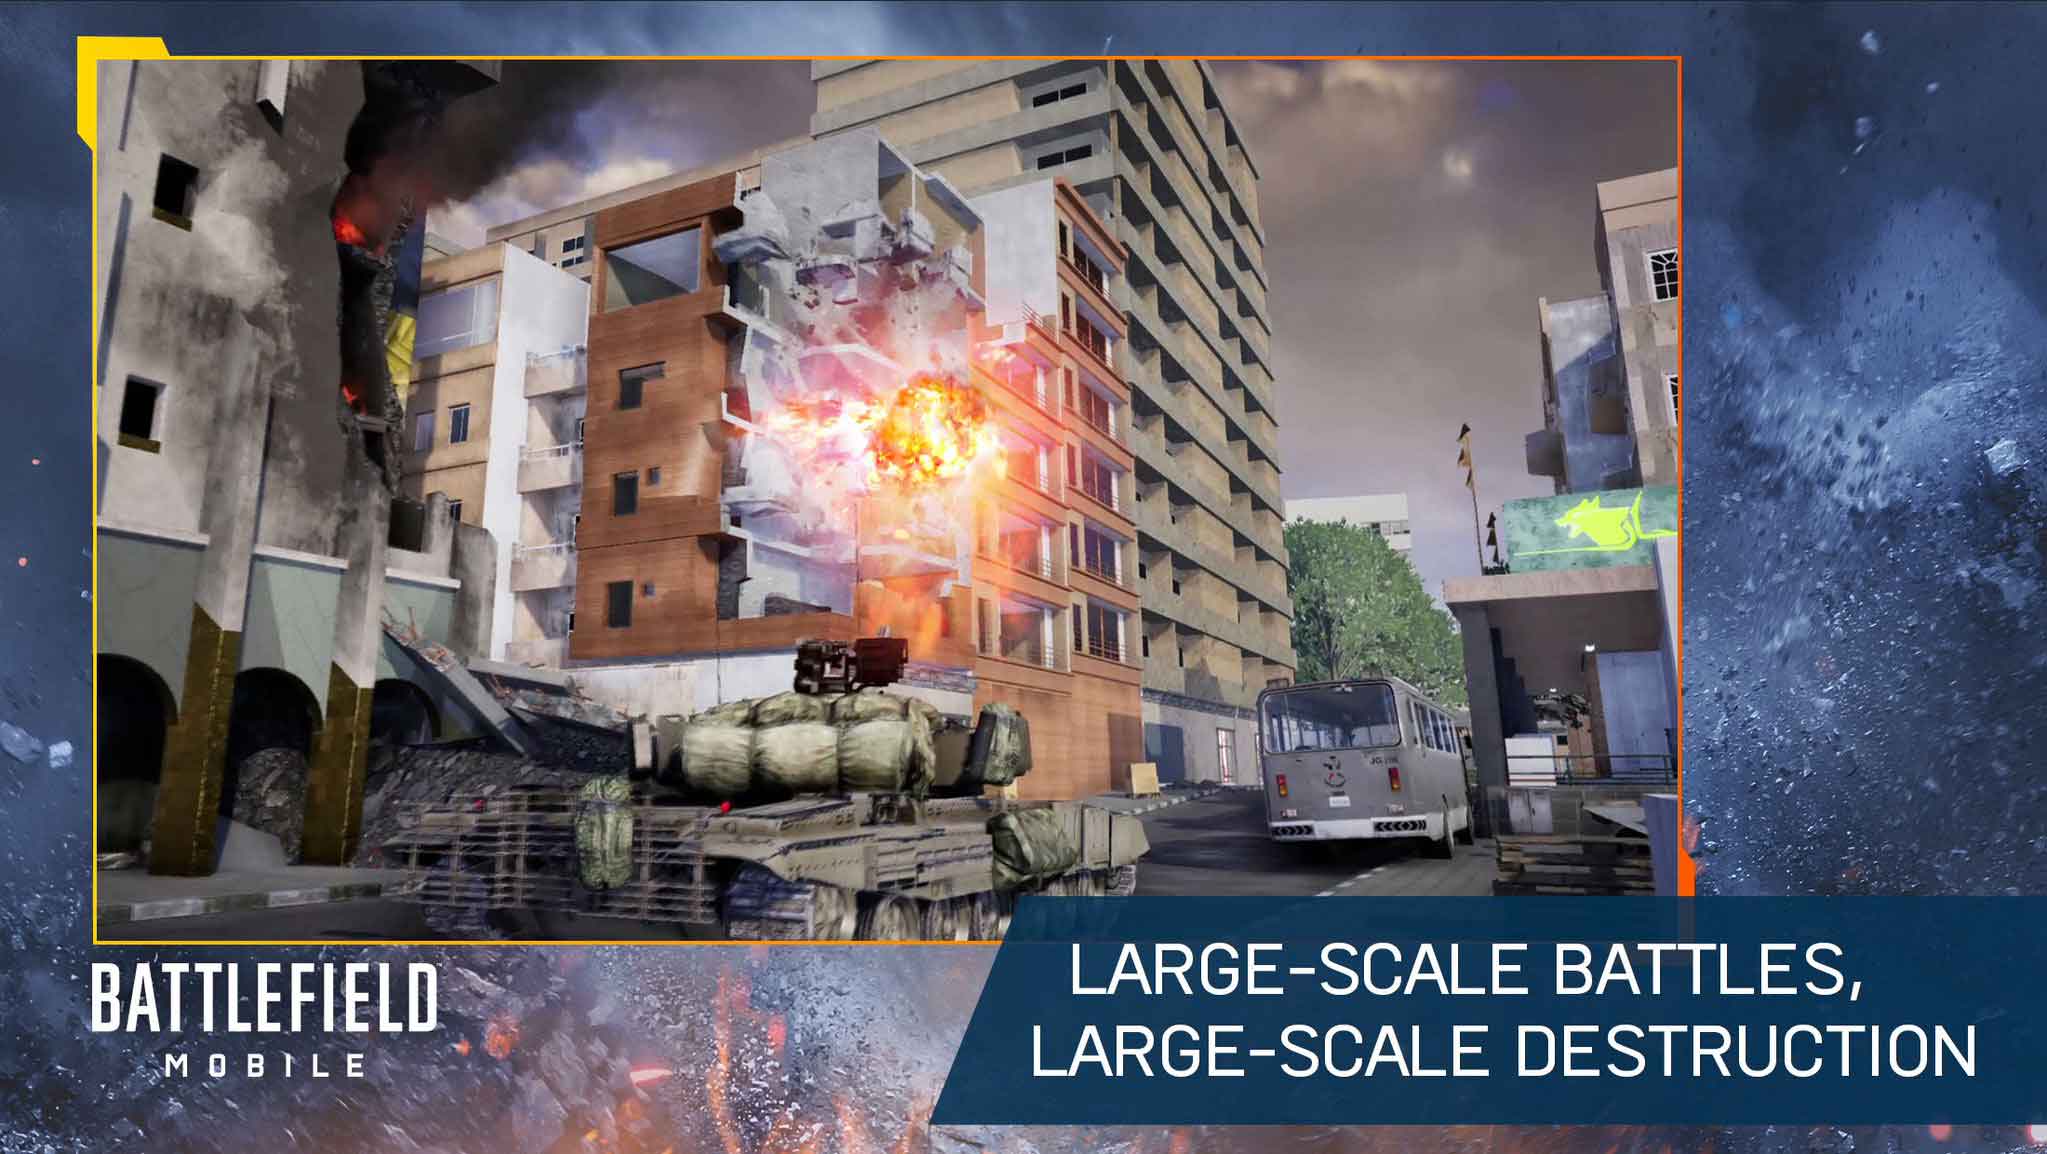 لعبة Battlefield Mobile متوفرة عبر متجر Google Play